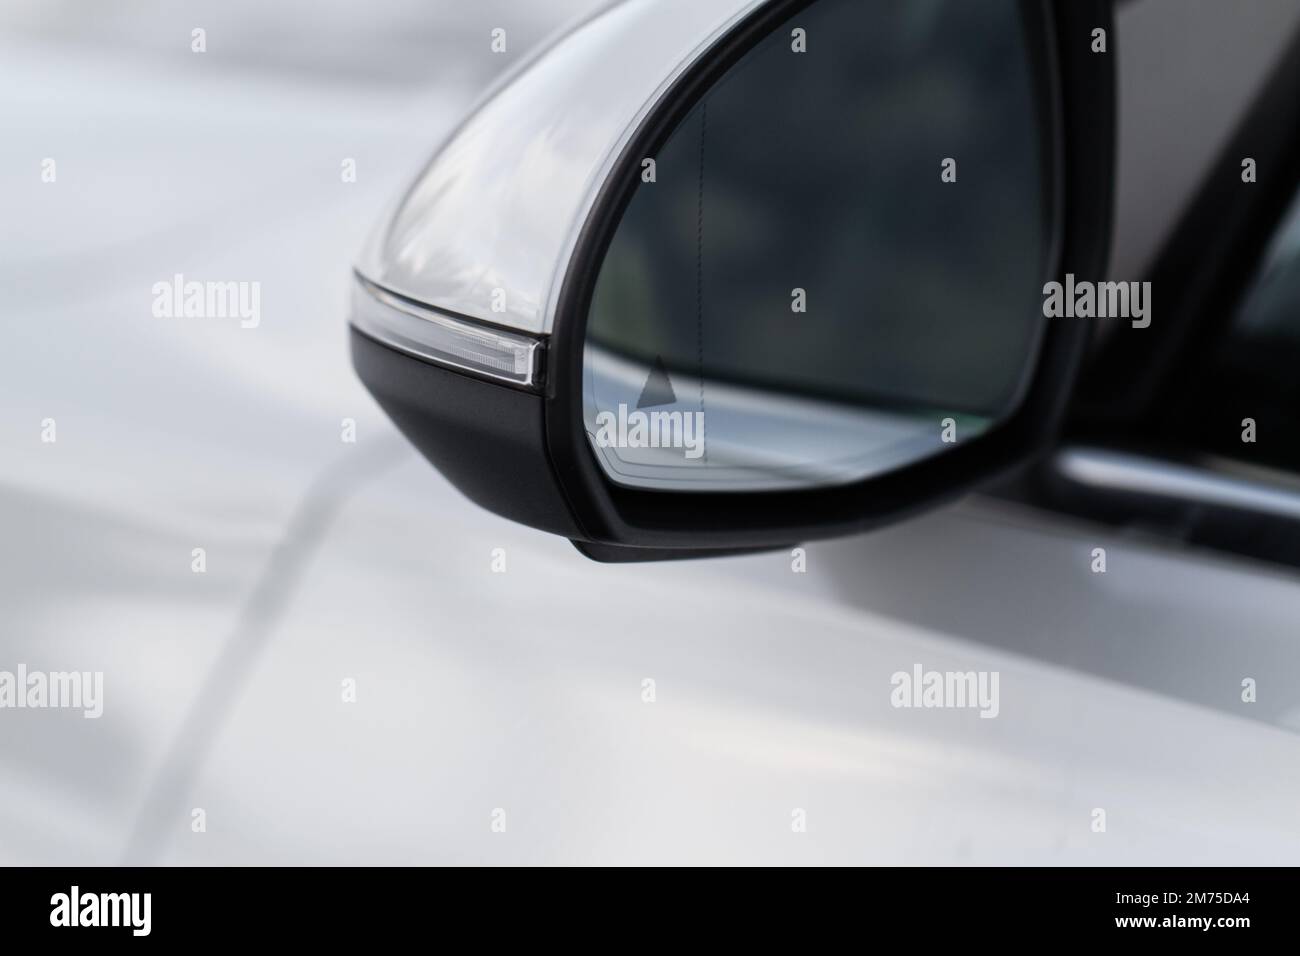 Imagen espejo retrovisor coche fotografías e imágenes de alta resolución -  Alamy